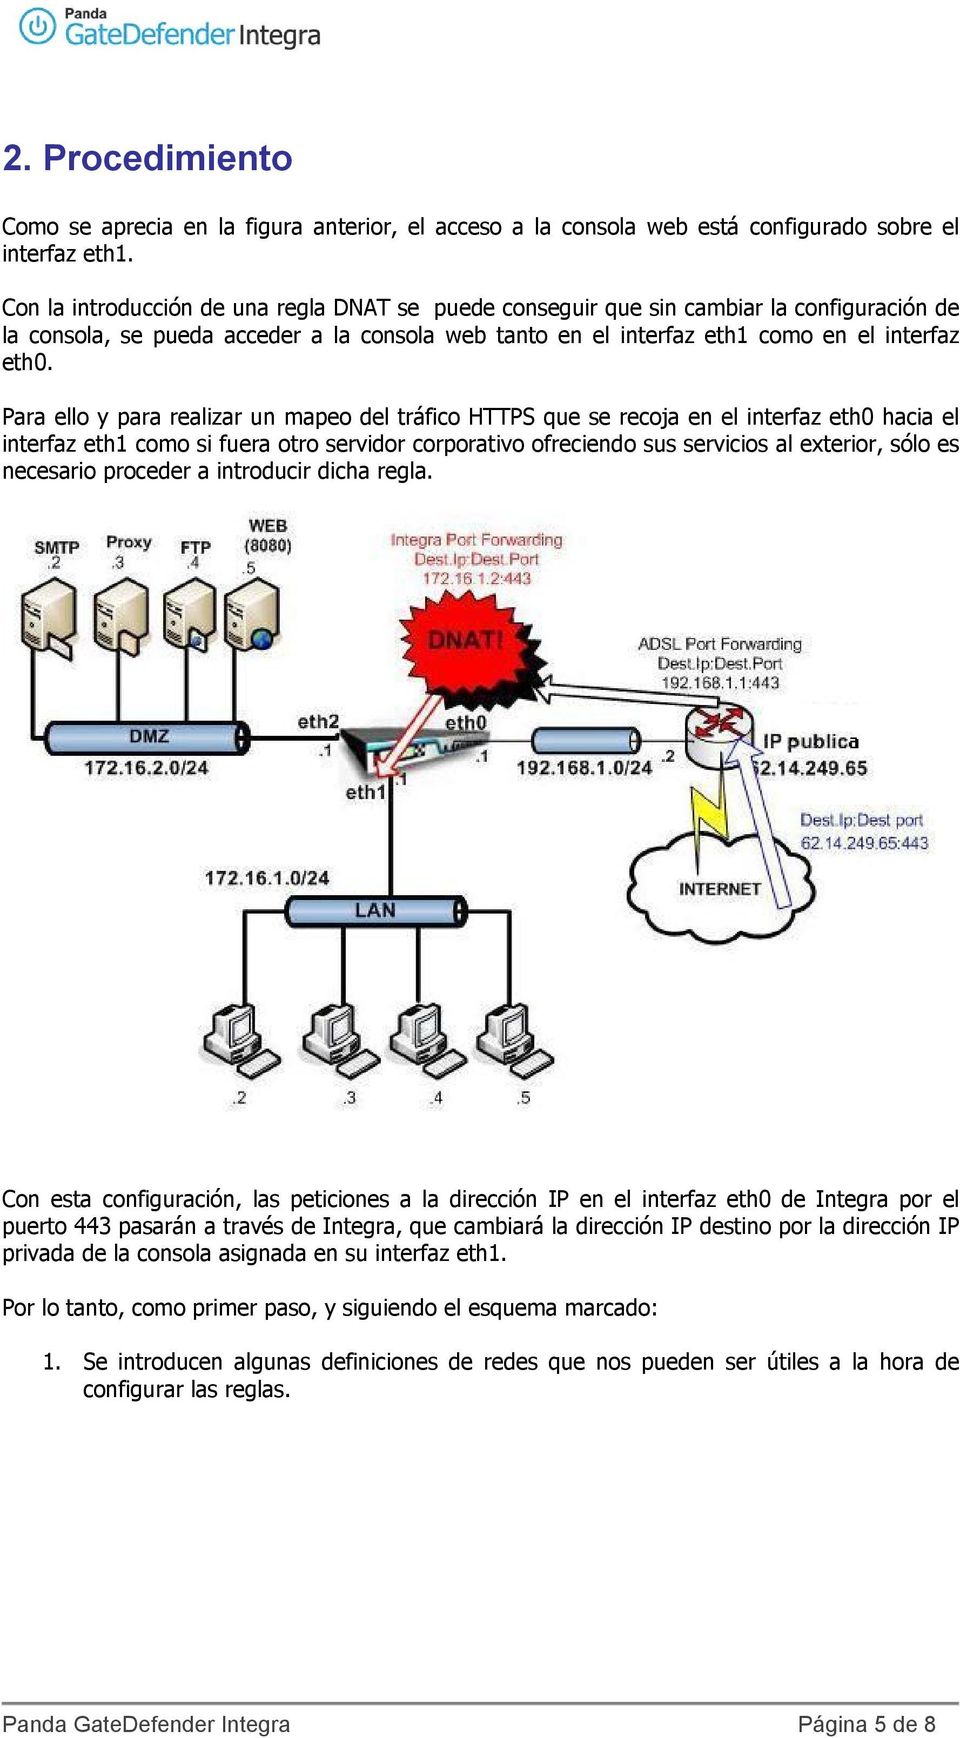 Para ello y para realizar un mapeo del tráfico HTTPS que se recoja en el interfaz eth0 hacia el interfaz eth1 como si fuera otro servidor corporativo ofreciendo sus servicios al exterior, sólo es